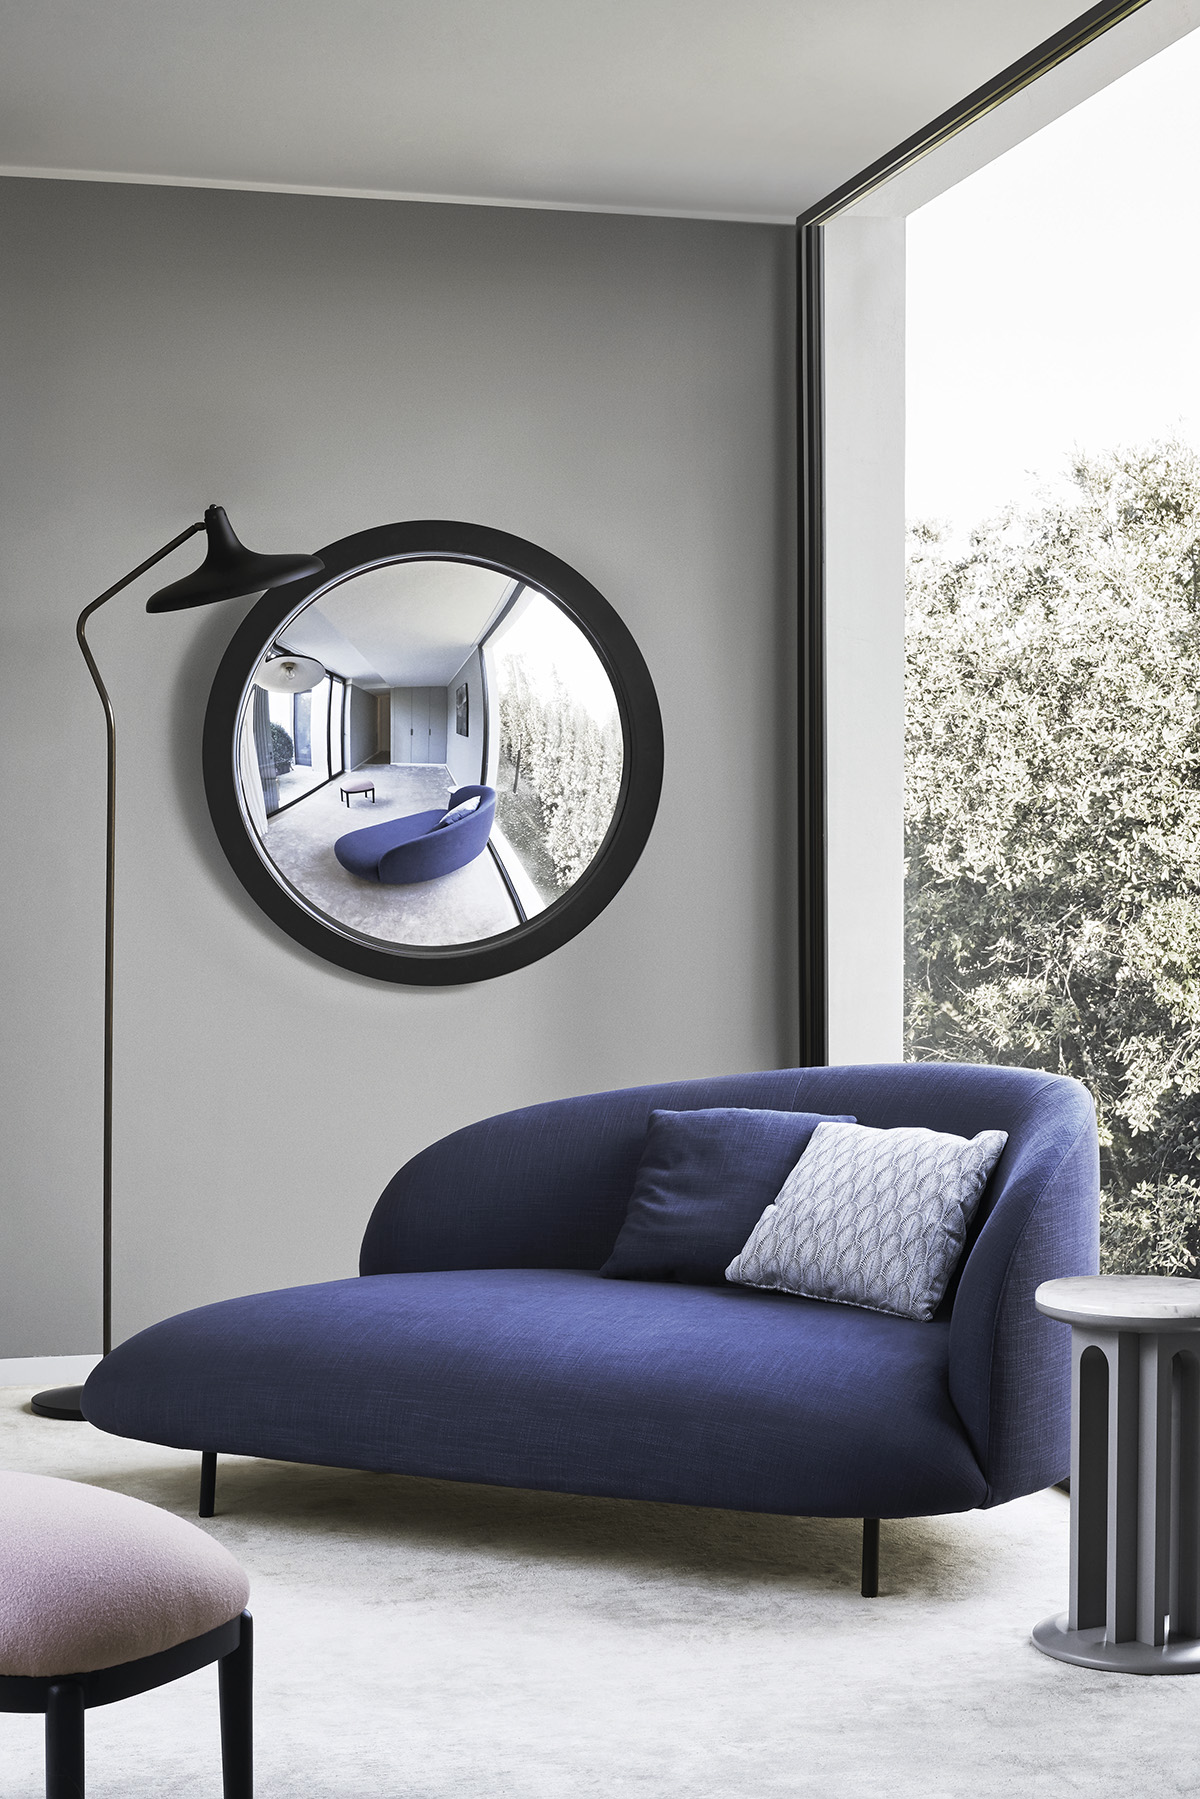 Arflex-Bonsai-sofa-design-Claesson-Koivisto-Rune- espreguiçadeira- tessido- estar-hospitalidade-projeto-luxo-doislugares-madeinitaly-contemporâneo-moderno